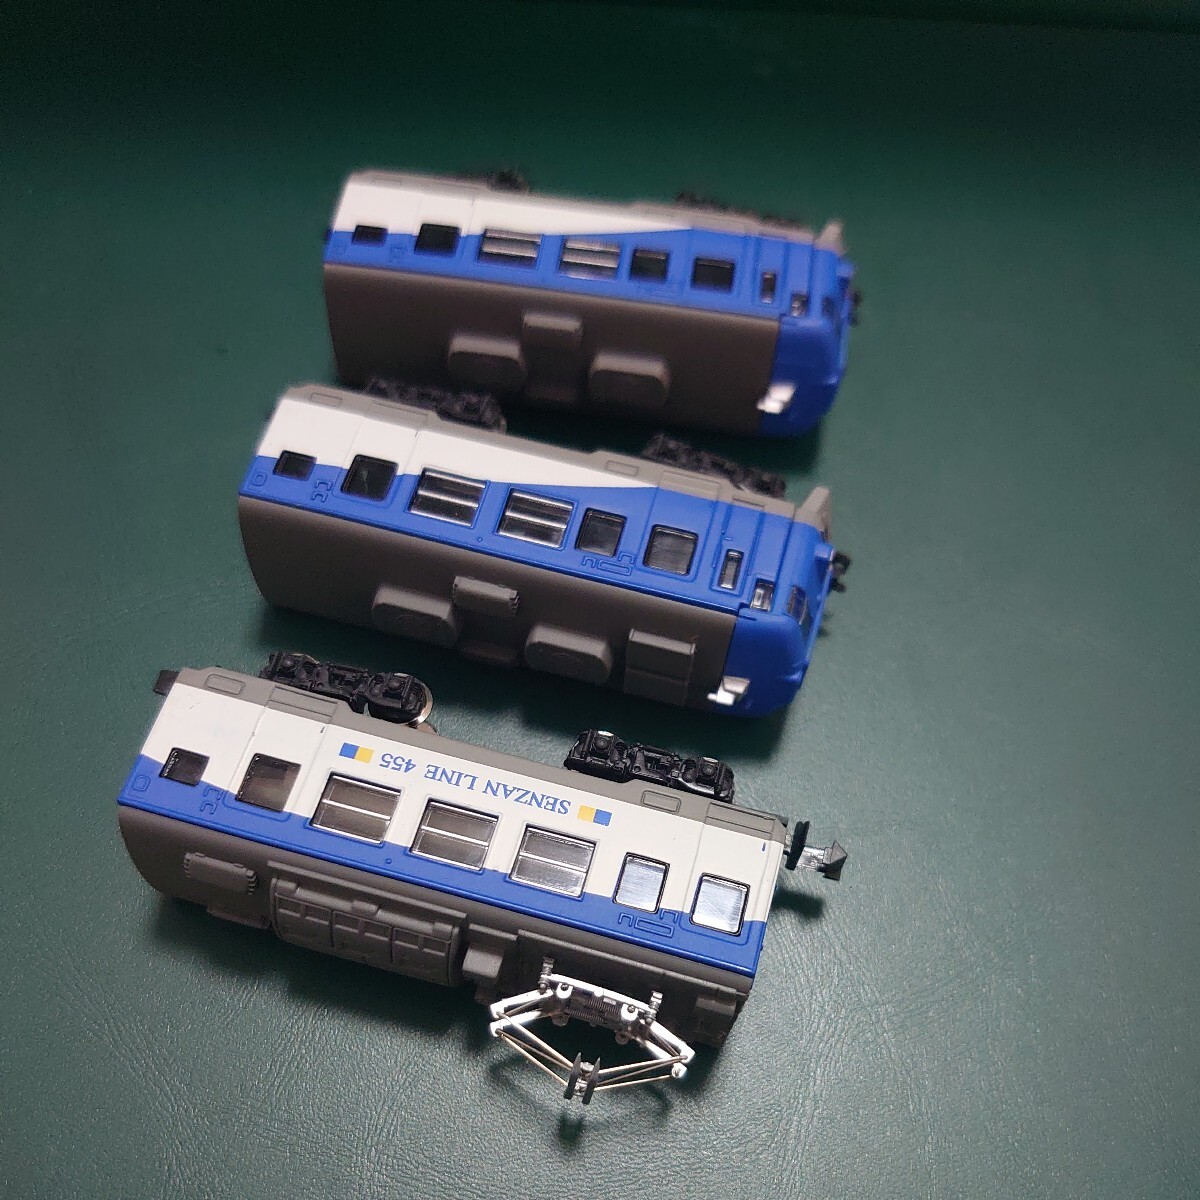 動力ユニット装備 457系 仙山線色 3両セット Bトレインショーティー Bトレ バンダイ 鉄道模型 Nゲージ化_画像5